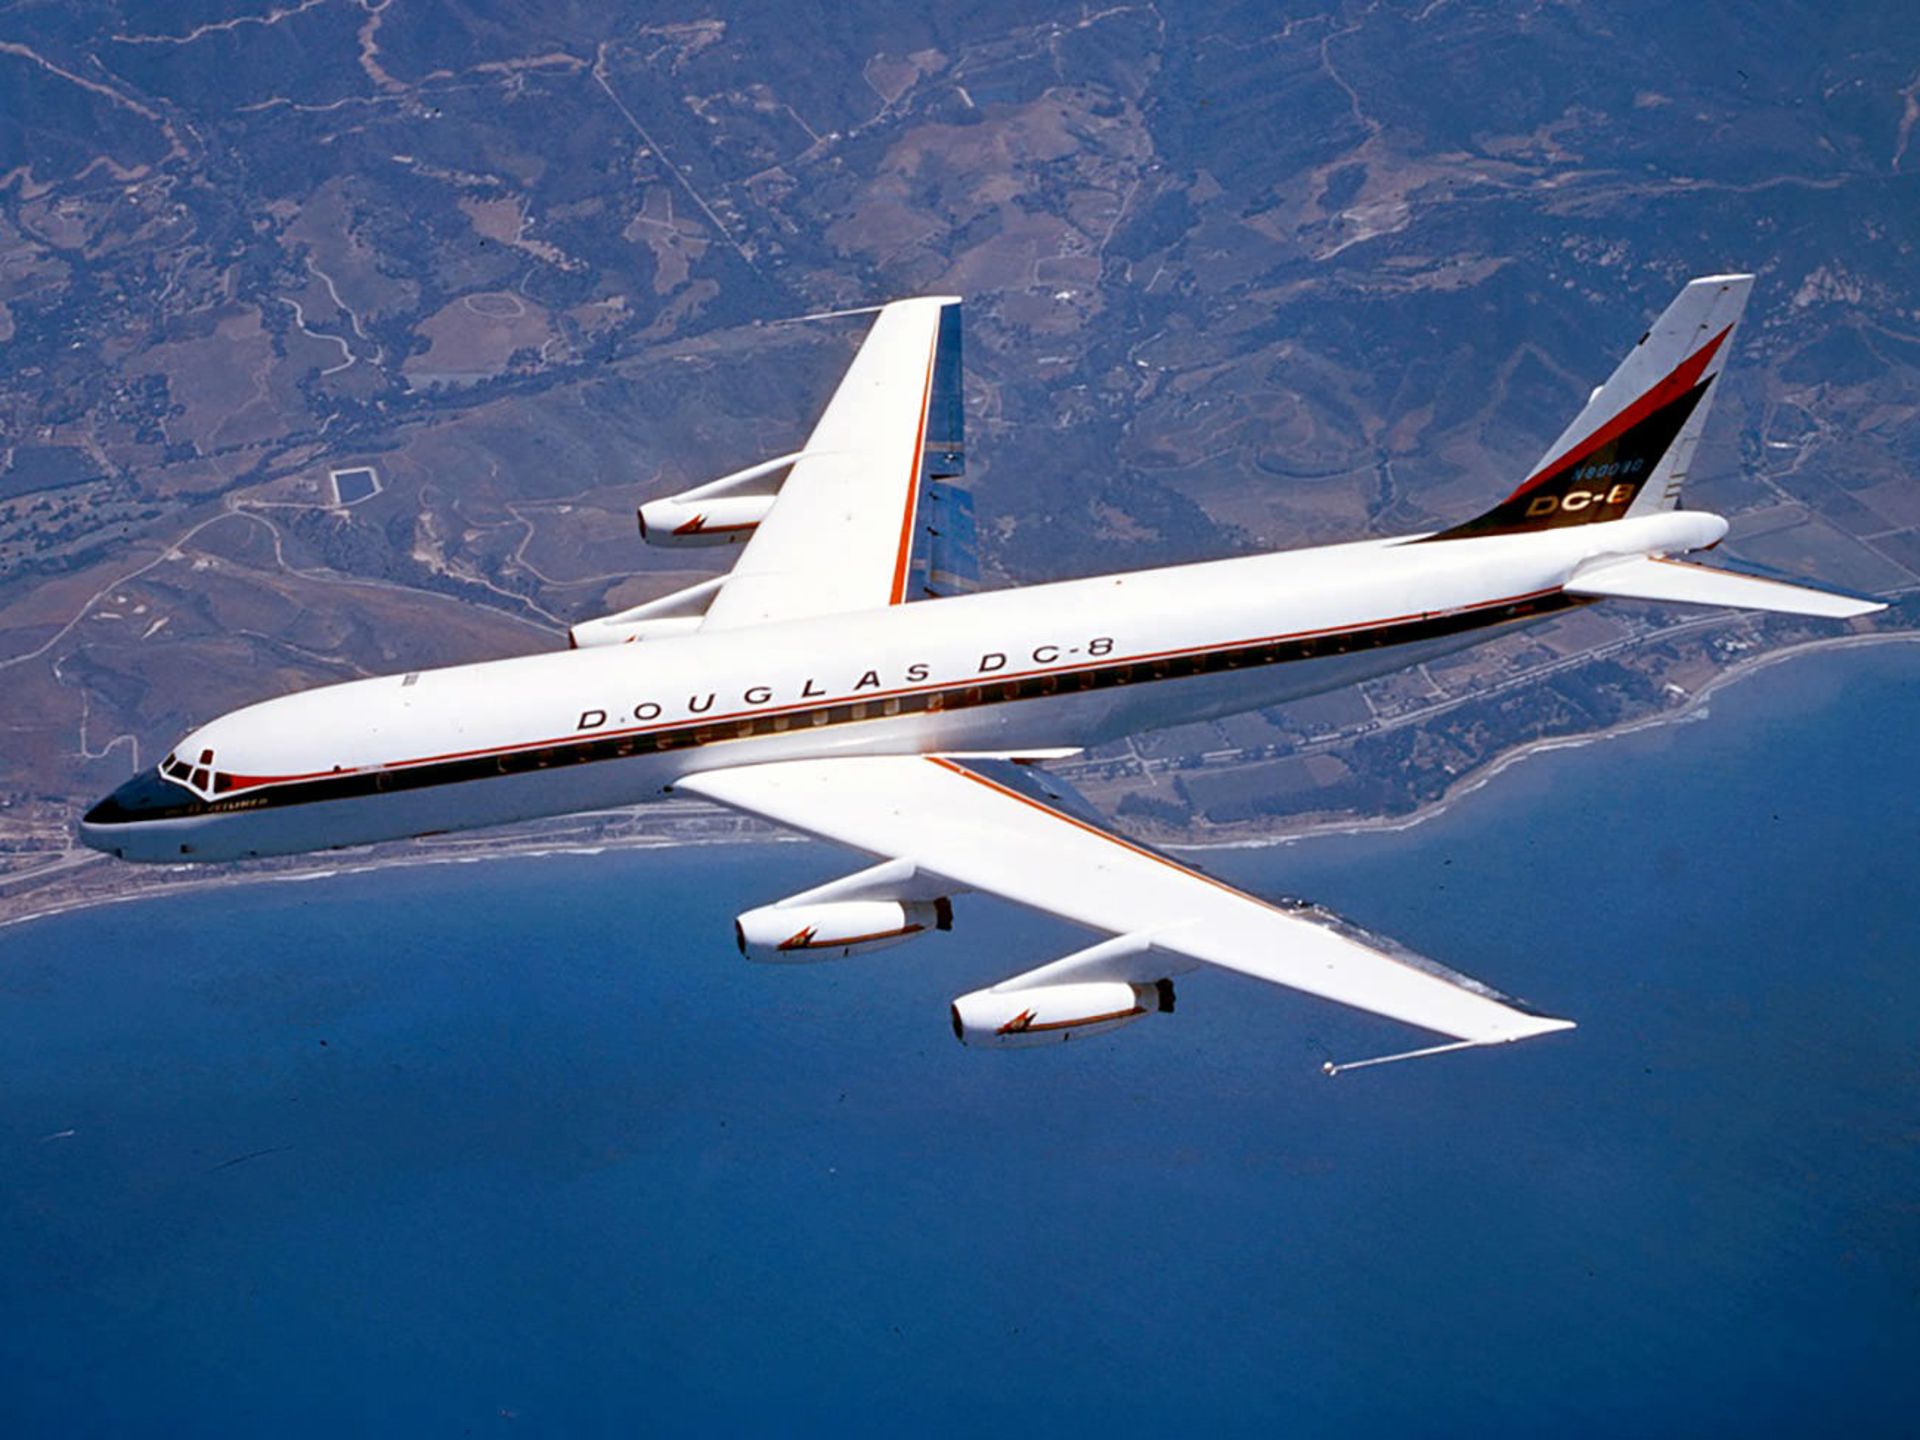 مرجع متخصصين ايران داگلاس DC-8